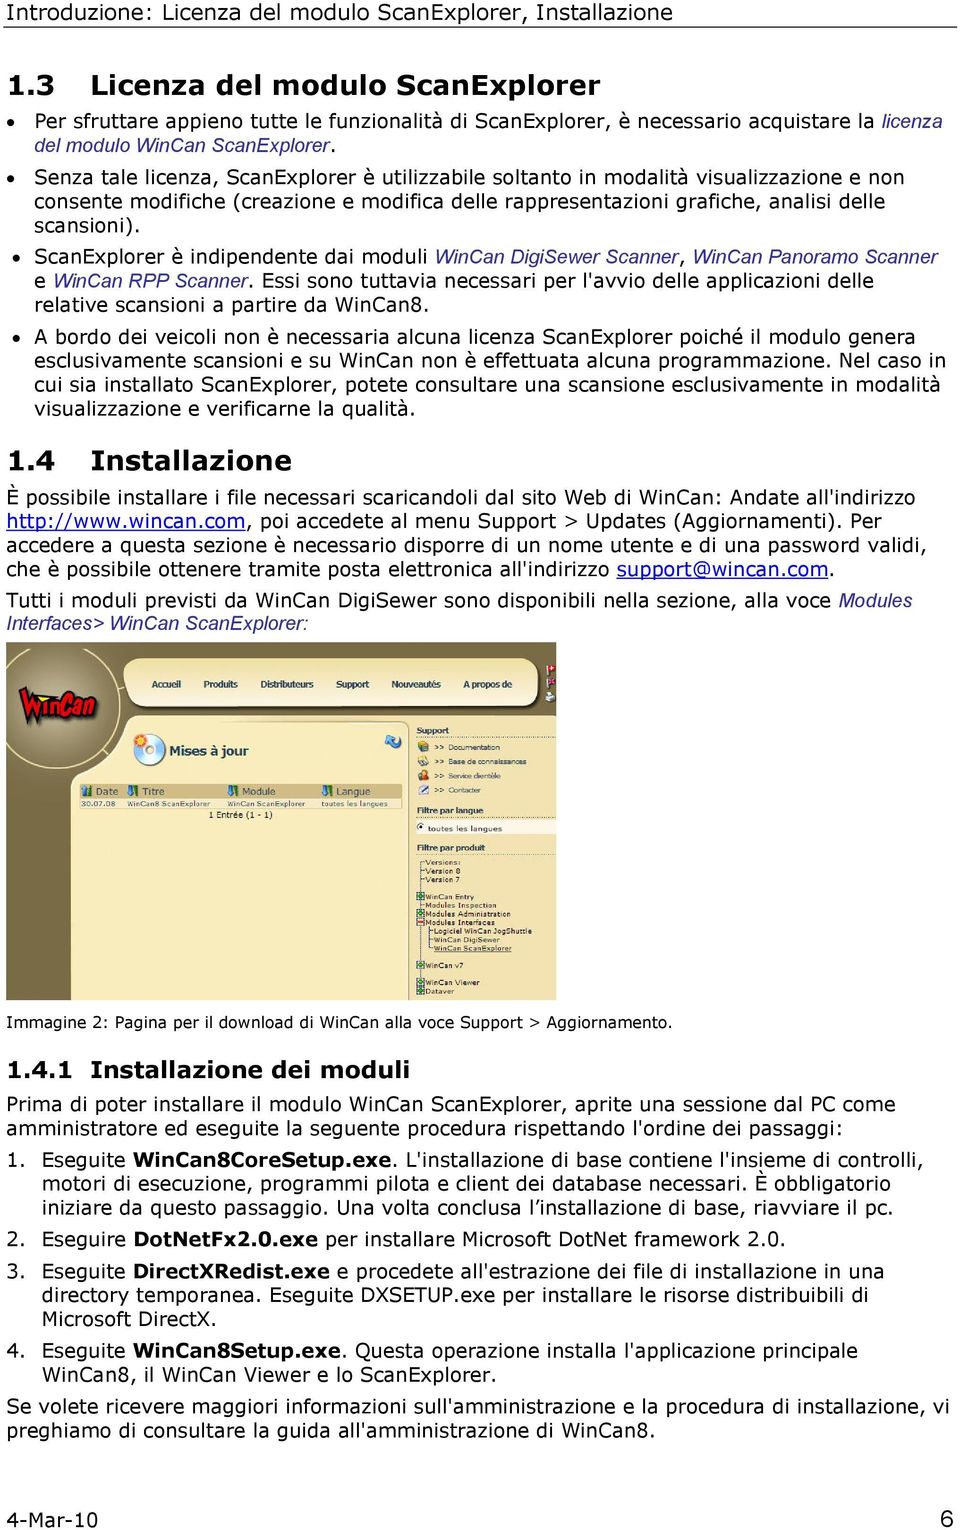 Senza tale licenza, ScanExplrer è utilizzabile sltant in mdalità visualizzazine e nn cnsente mdifiche (creazine e mdifica delle rappresentazini grafiche, analisi delle scansini).